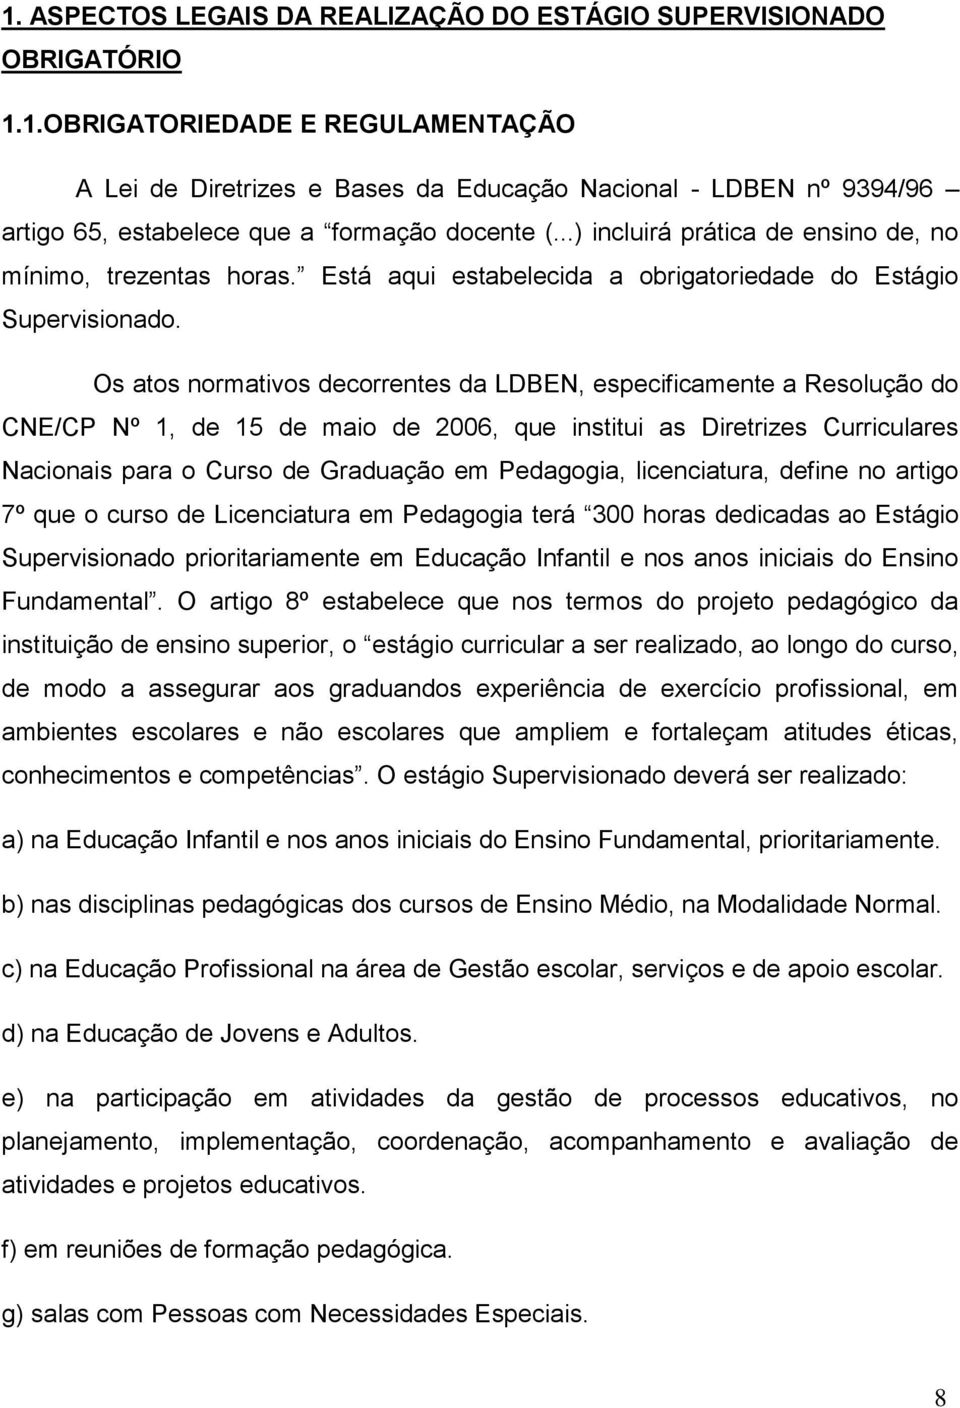 Os atos normativos decorrentes da LDBEN, especificamente a Resolução do CNE/CP Nº 1, de 15 de maio de 2006, que institui as Diretrizes Curriculares Nacionais para o Curso de Graduação em Pedagogia,